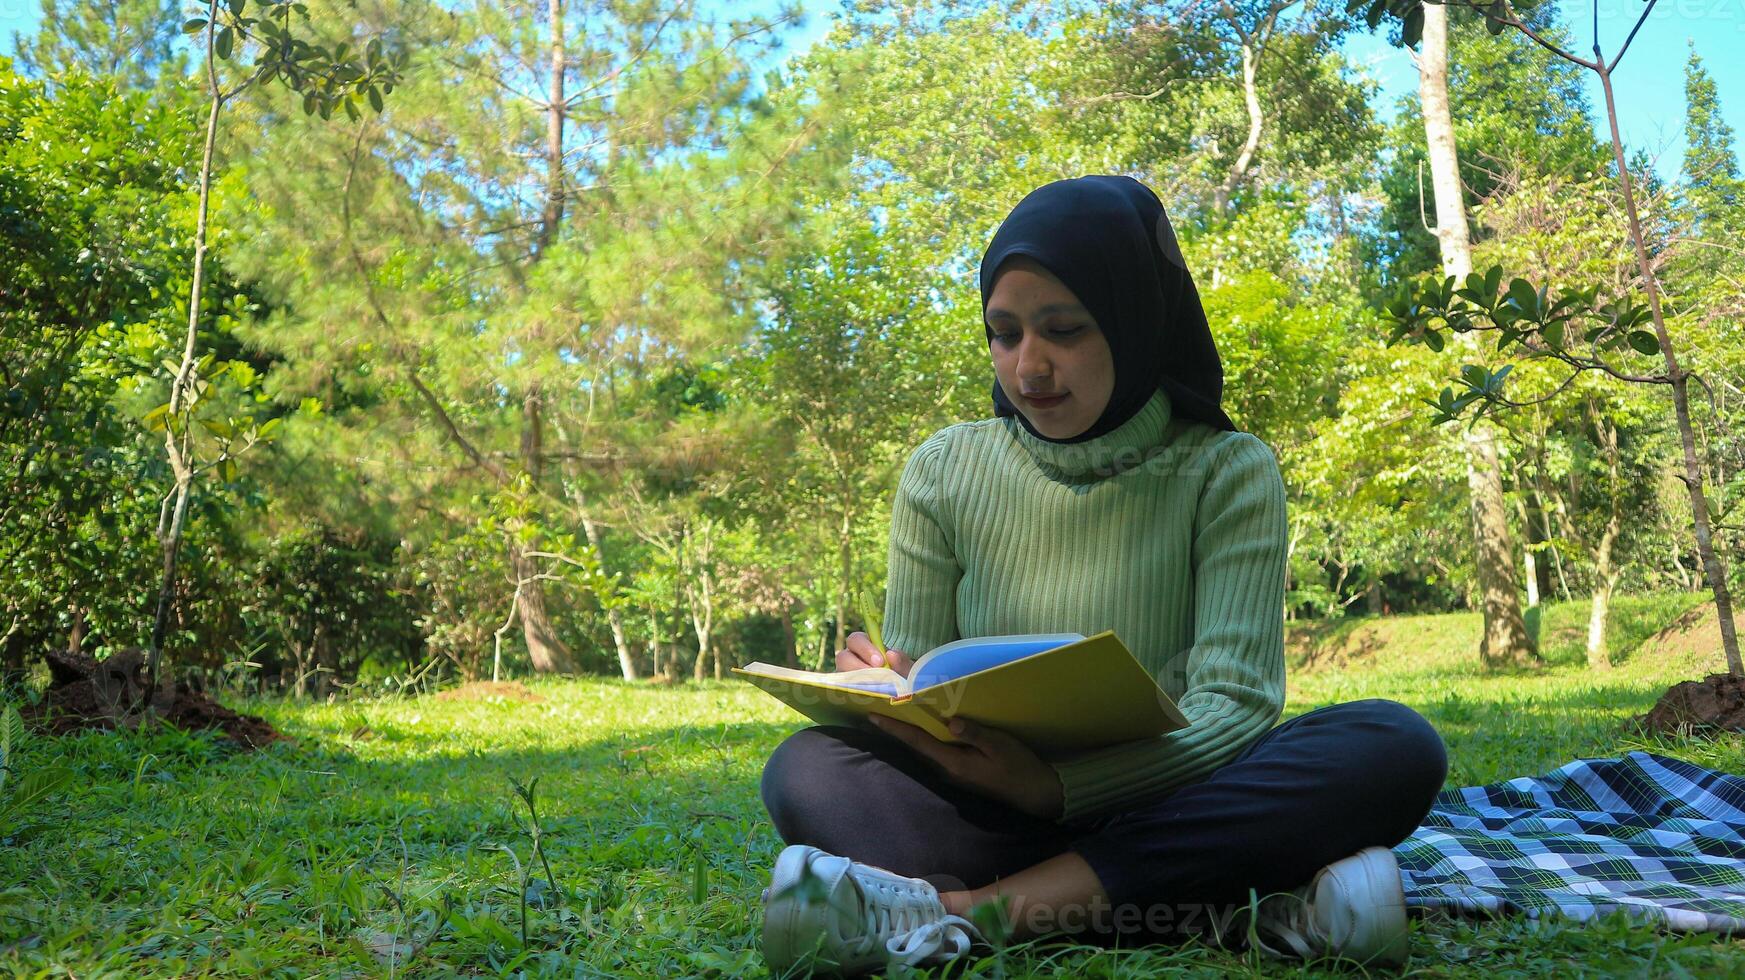 rilassato musulmano donna godendo fine settimana a parco, seduta su erba e scrittura prenotare, vuoto spazio foto